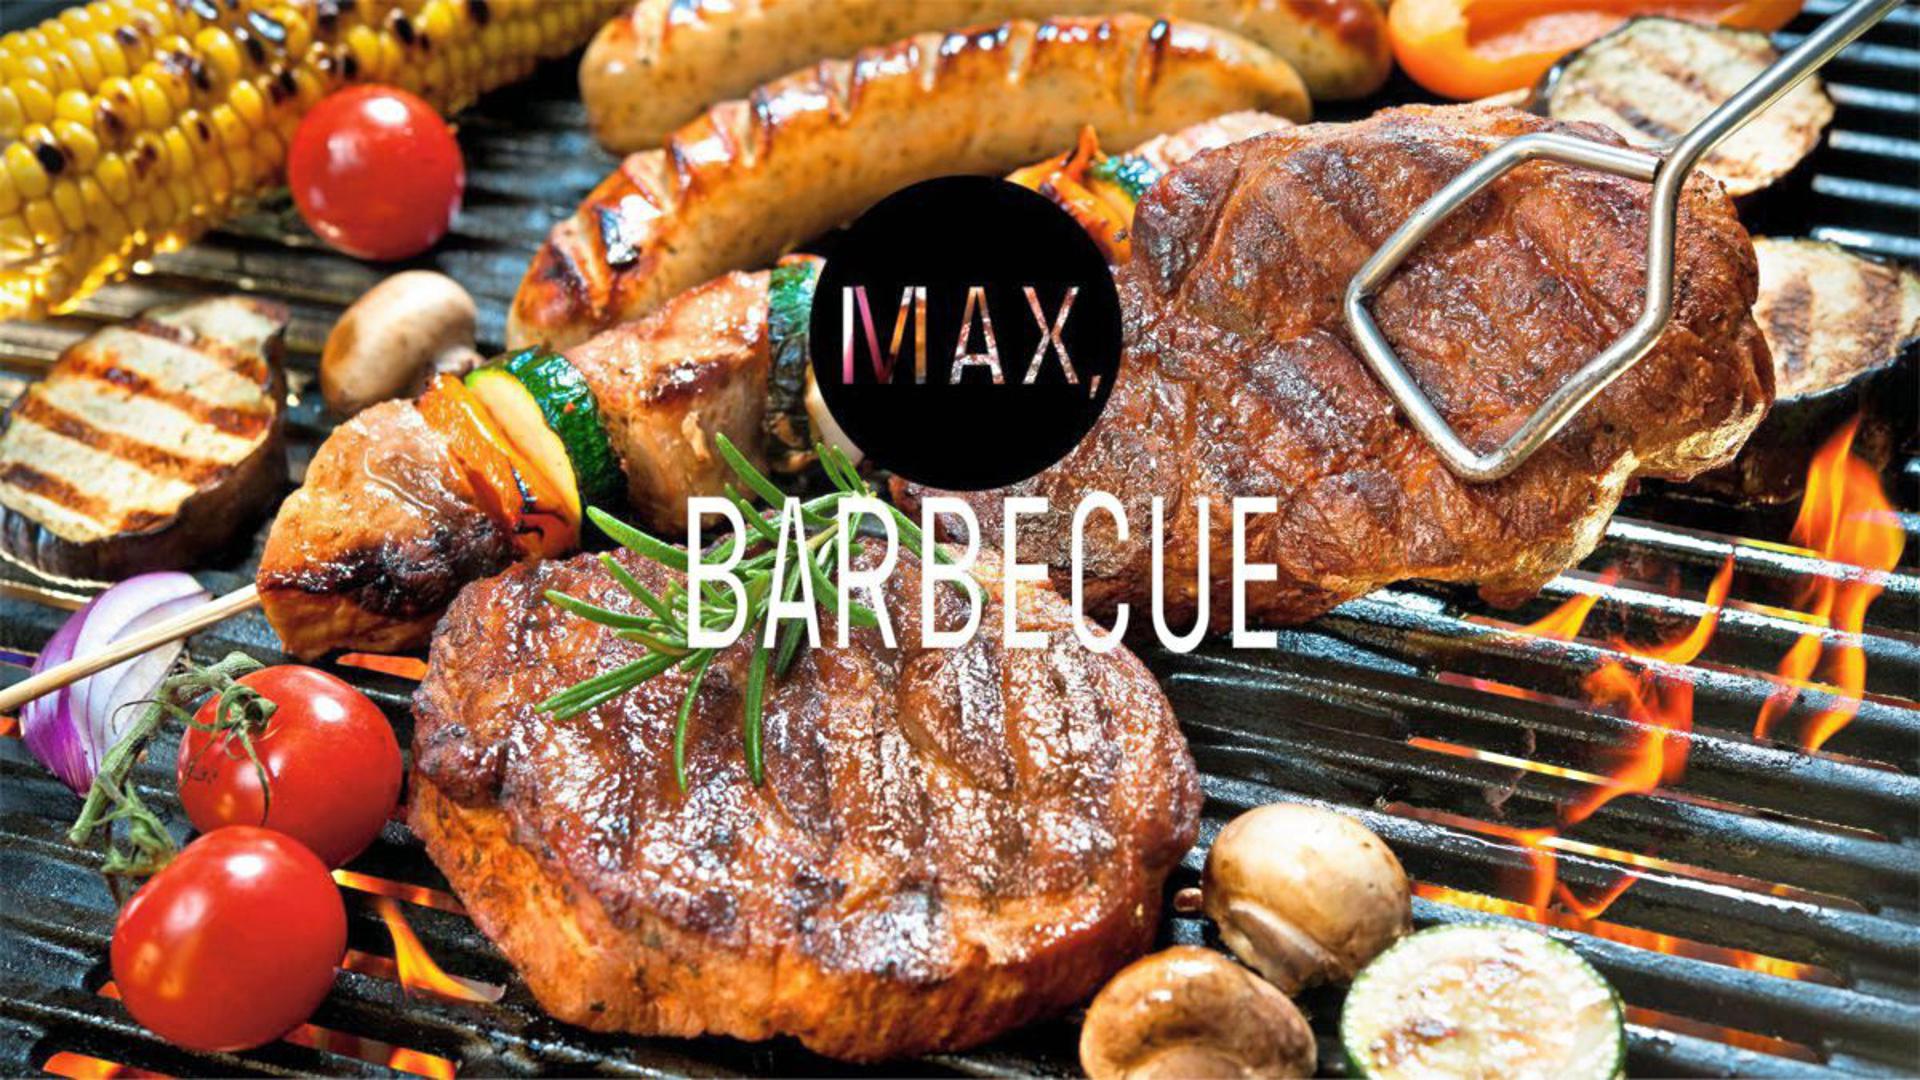 Max Harden Barbecue